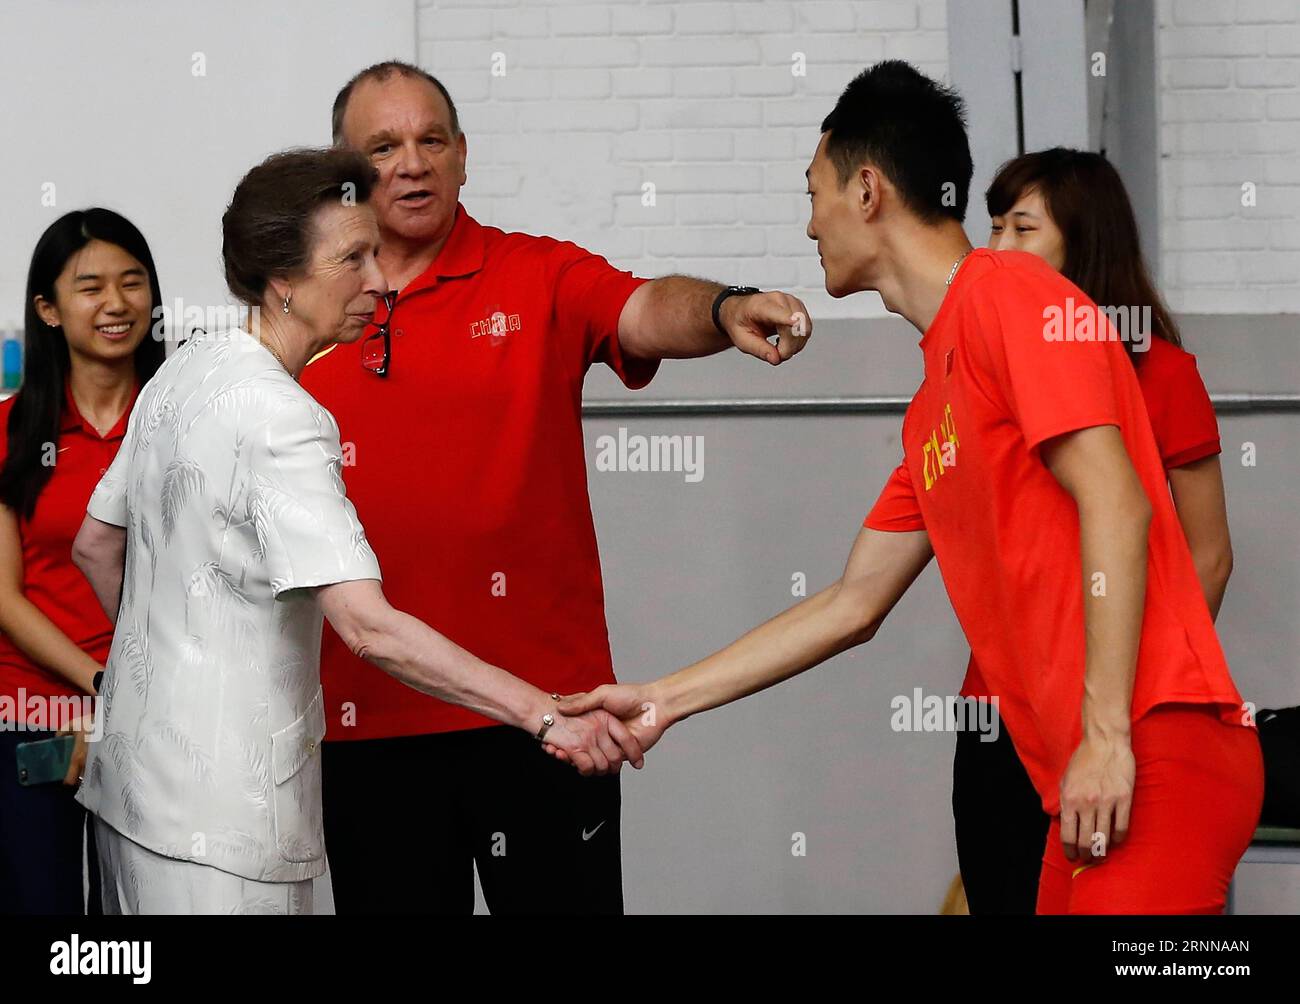 (170704) -- PÉKIN, le 4 juillet 2017 -- l'athlète chinois de saut en longueur Wang Jianan (droite) serre la main de la princesse britannique Anne dans un stade d'entraînement de l'Administration générale des sports à Pékin, capitale de la Chine, le 4 juillet 2017. La princesse Anne a rencontré mardi des athlètes chinois d'athlétisme qui se rendront à Londres pour assister aux Championnats du monde de l'IAAF 2017. (SP)CHINA-BEIJING-ATHLETICS-PRINCESS ANNE-VISIT (CN) WangxLili PUBLICATIONxNOTxINxCHN Beijing juillet 4 2017 l'athlète chinois de saut en longueur Wang Jianan r serre la main de la Princesse britannique Anne LORS D'un stage d'entraînement de l'administration générale des sports à BEI Banque D'Images